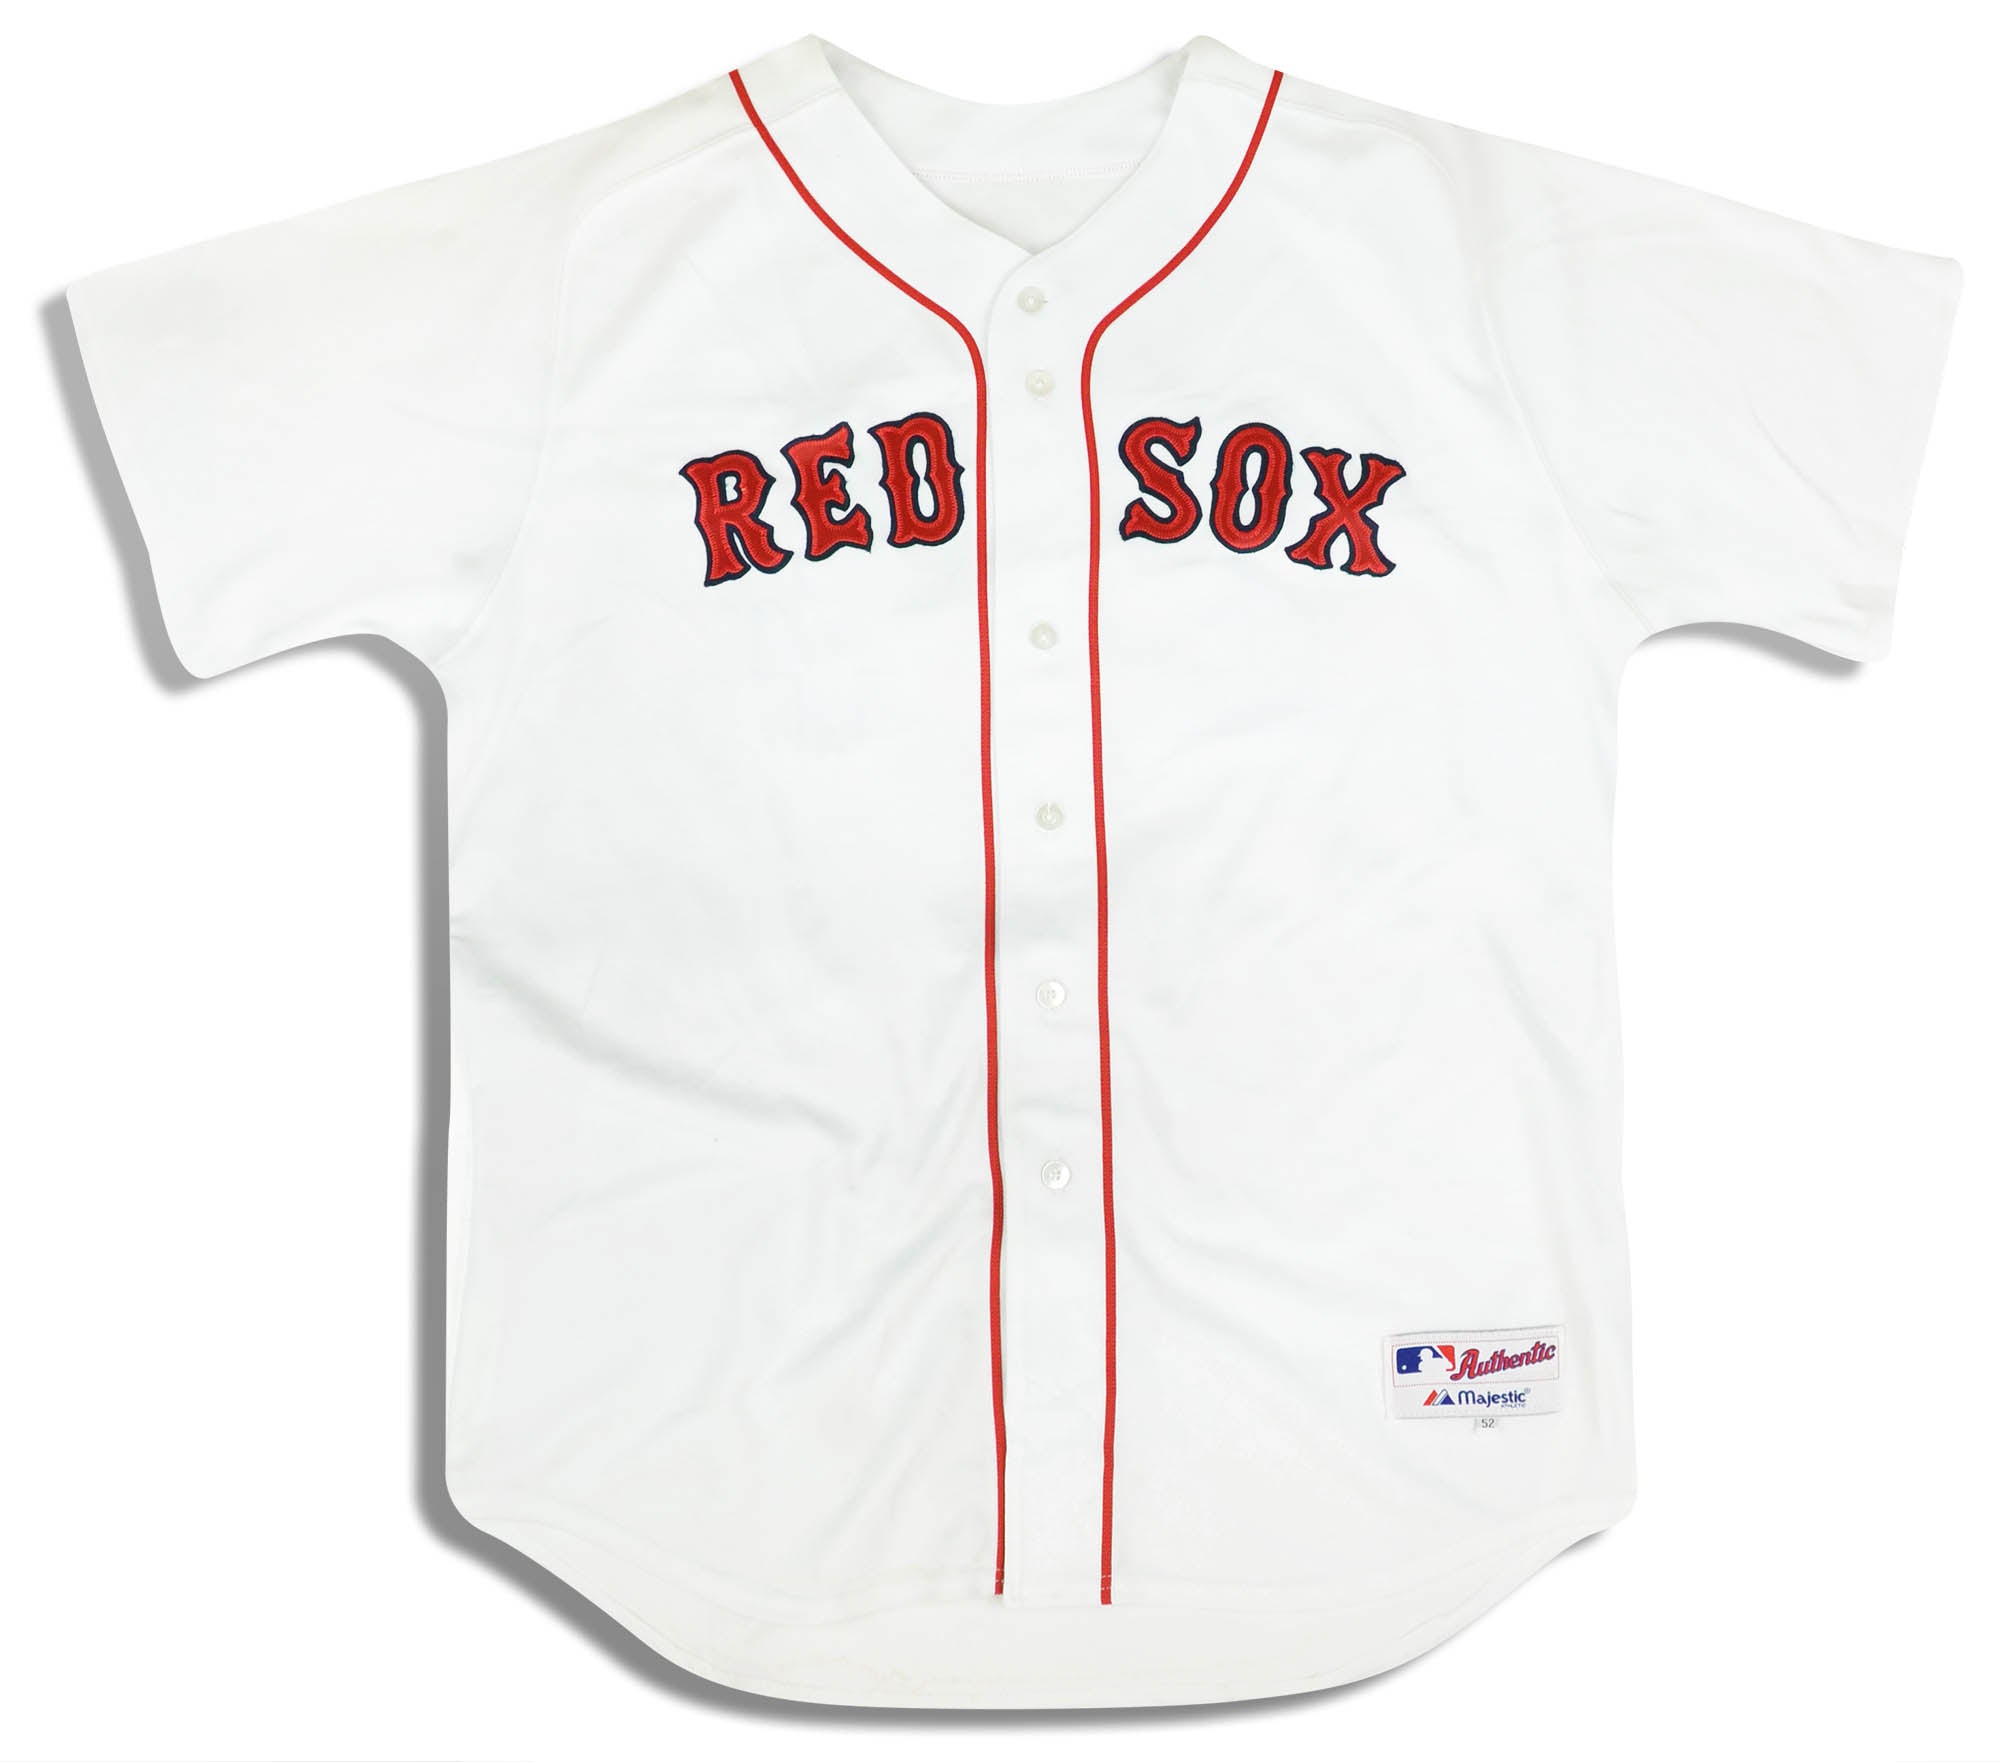 BOSTON RED SOX MANNY RAMIREZ MAJESTIC AUTHENTIC MLB BASEBALL